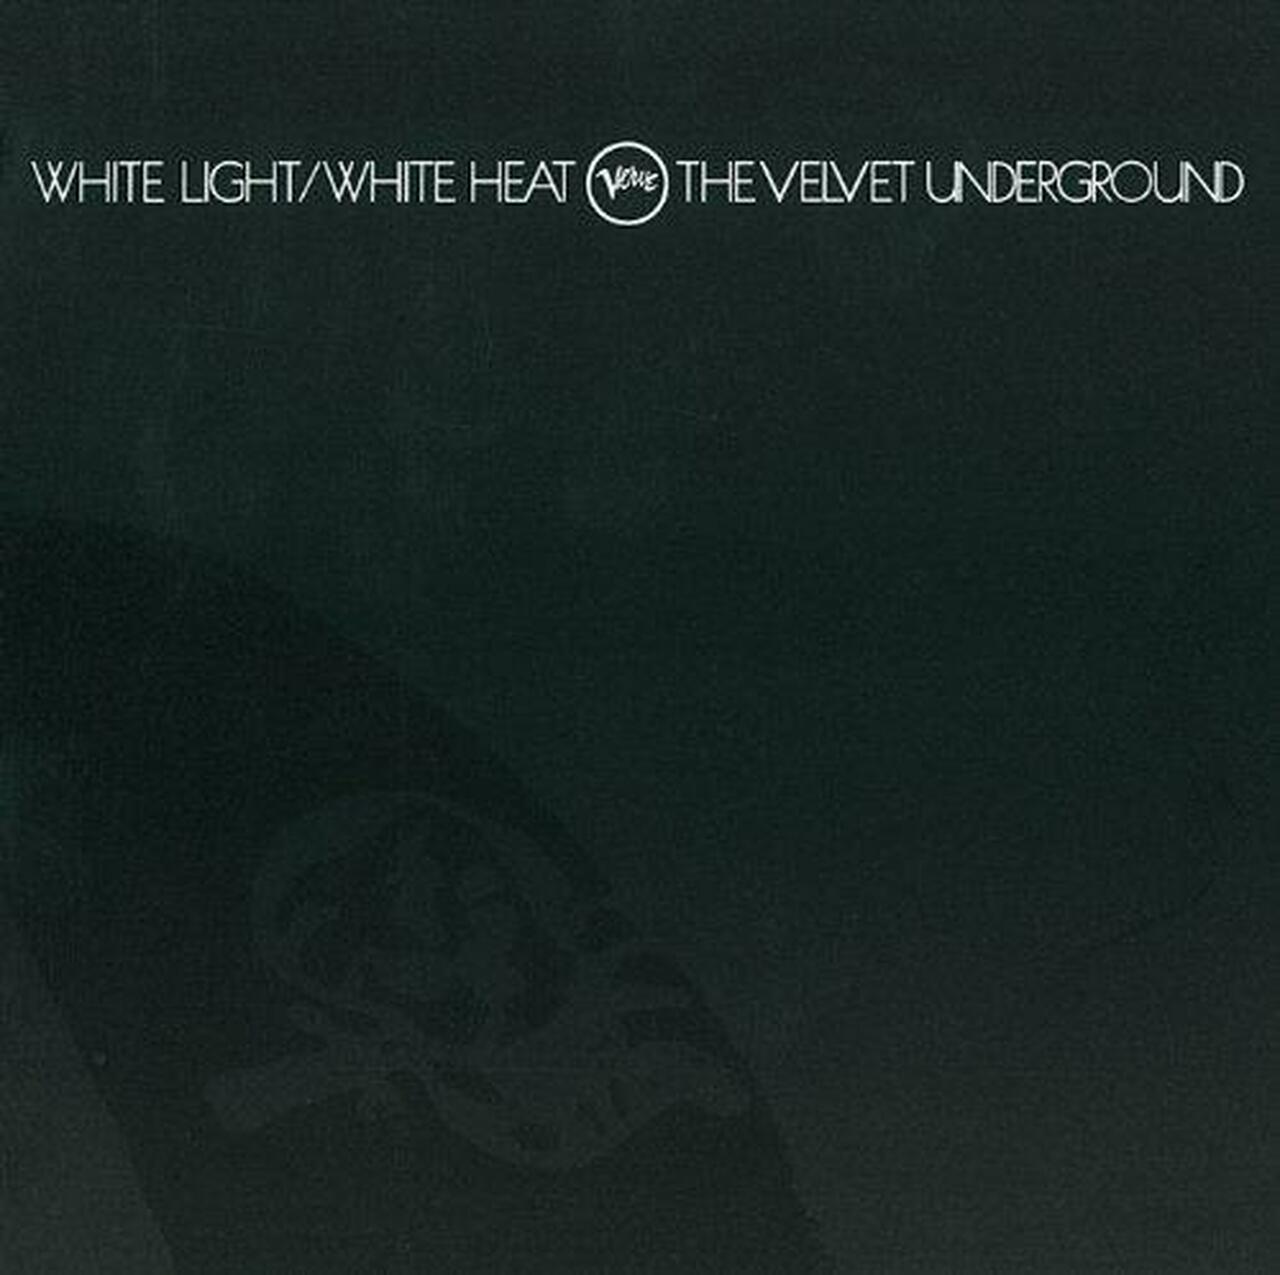 Velvet Underground "White Light, White Heat" LP